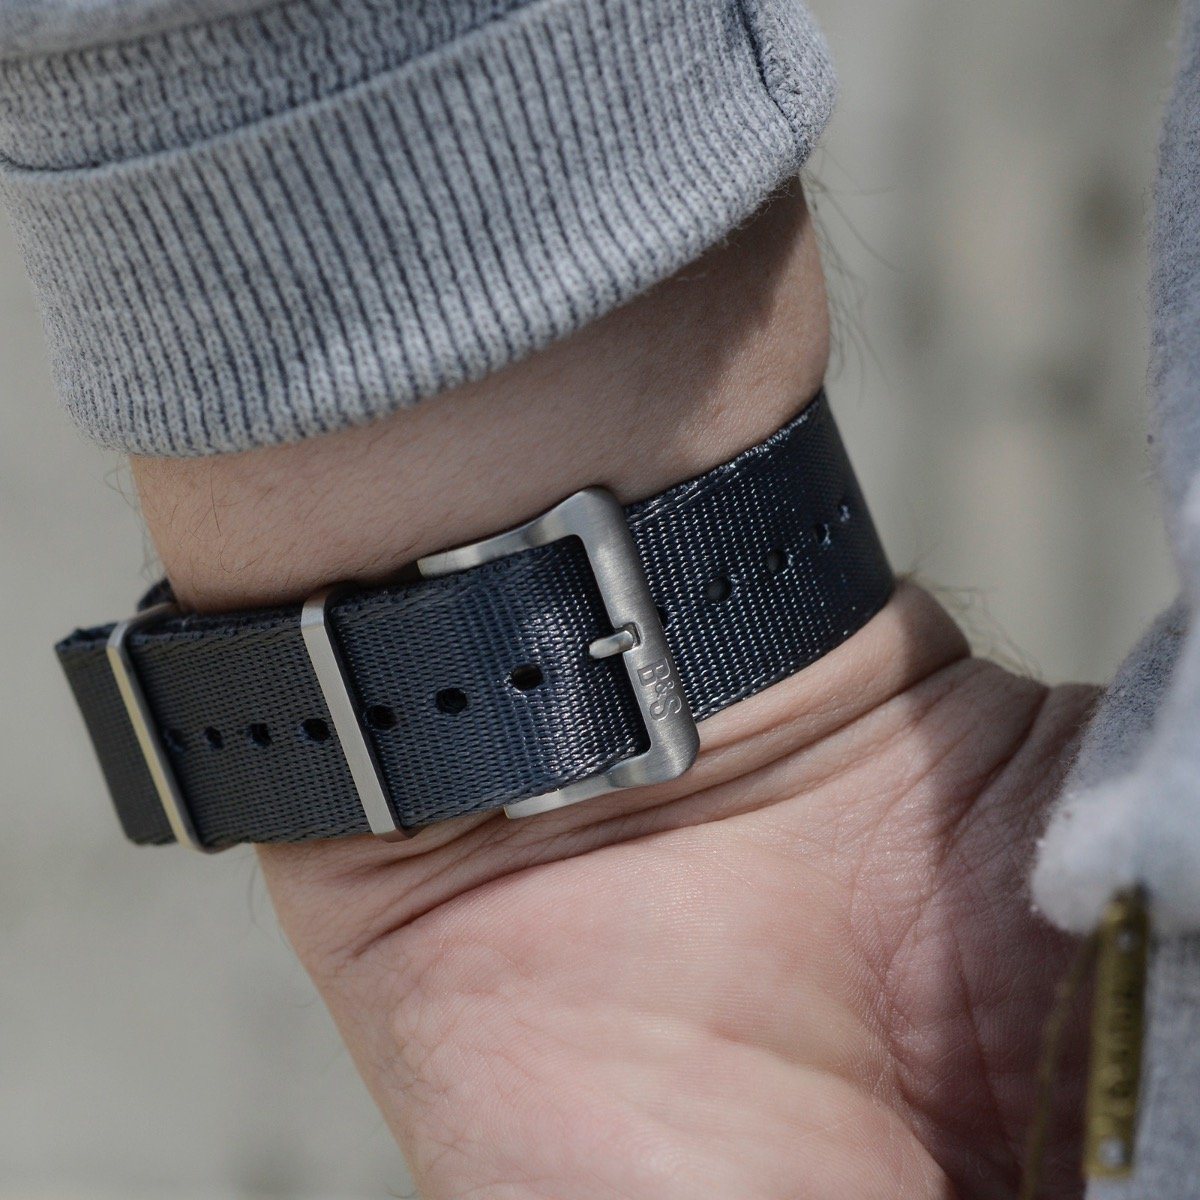 Deluxe Nylon Nato Watch Strap Pure Grey